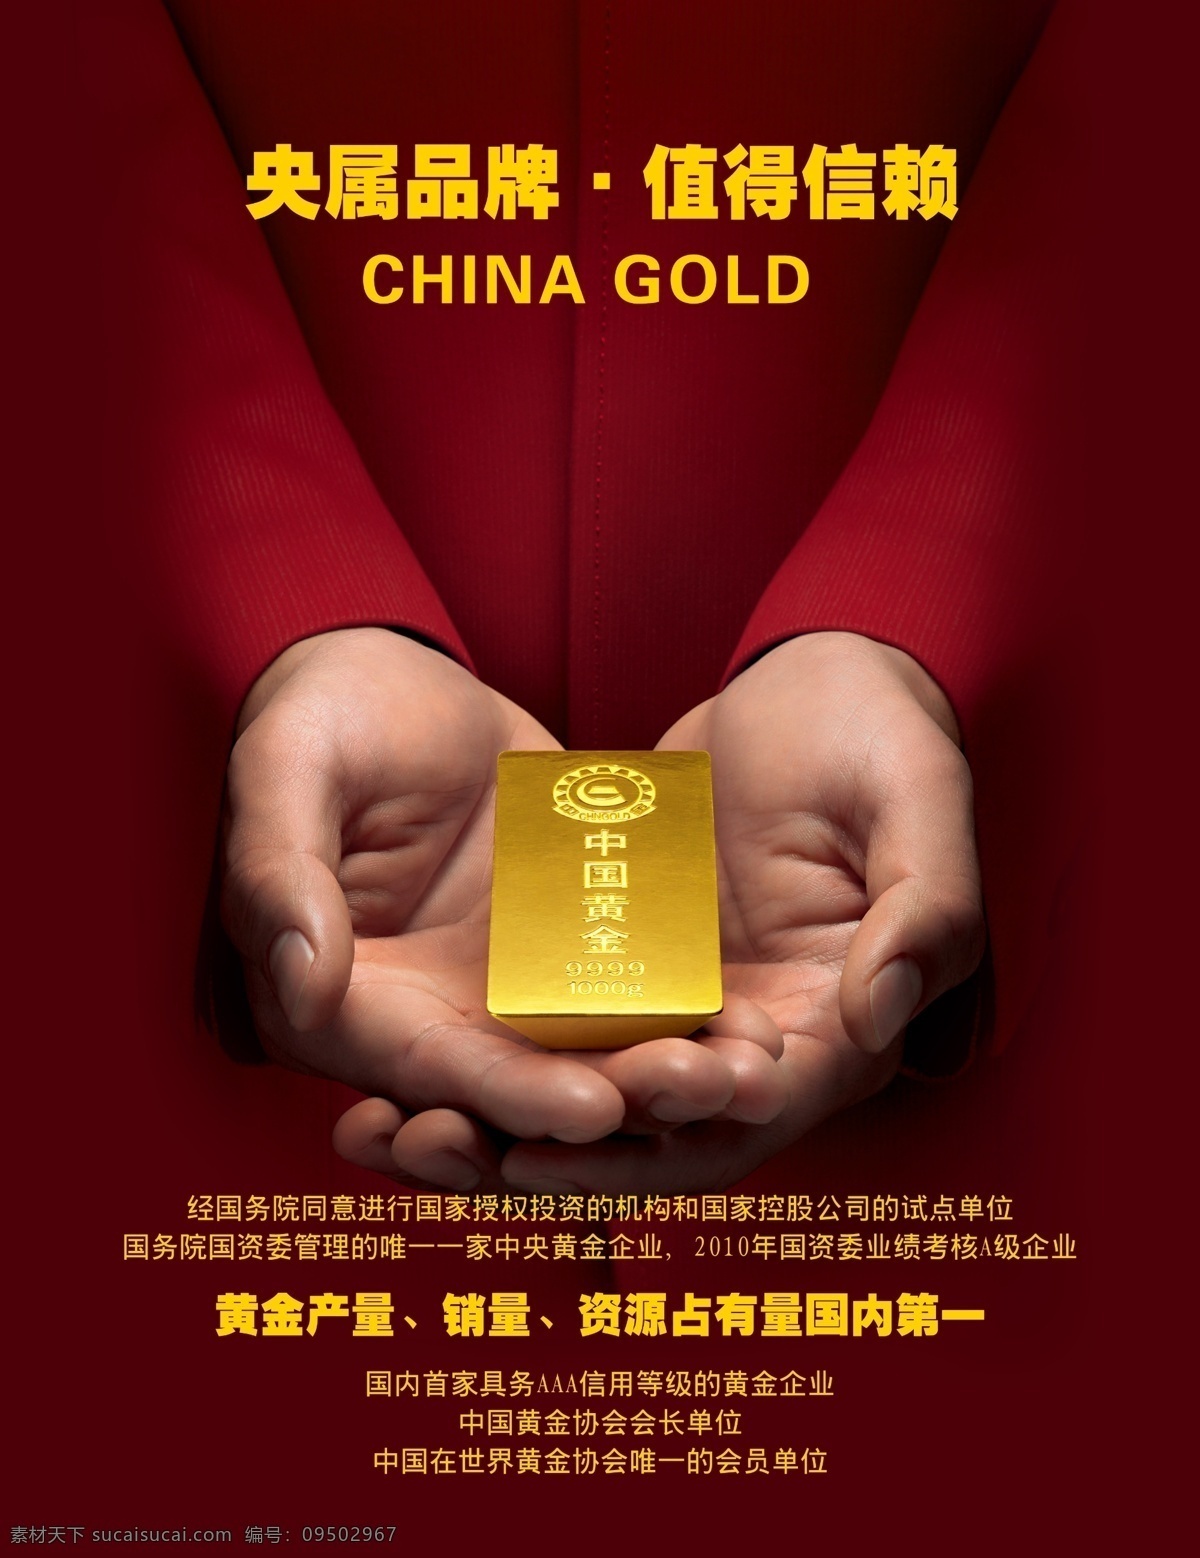 中国黄金灯箱 中国黄金海报 黄金 手 中国黄金 广告设计模板 源文件